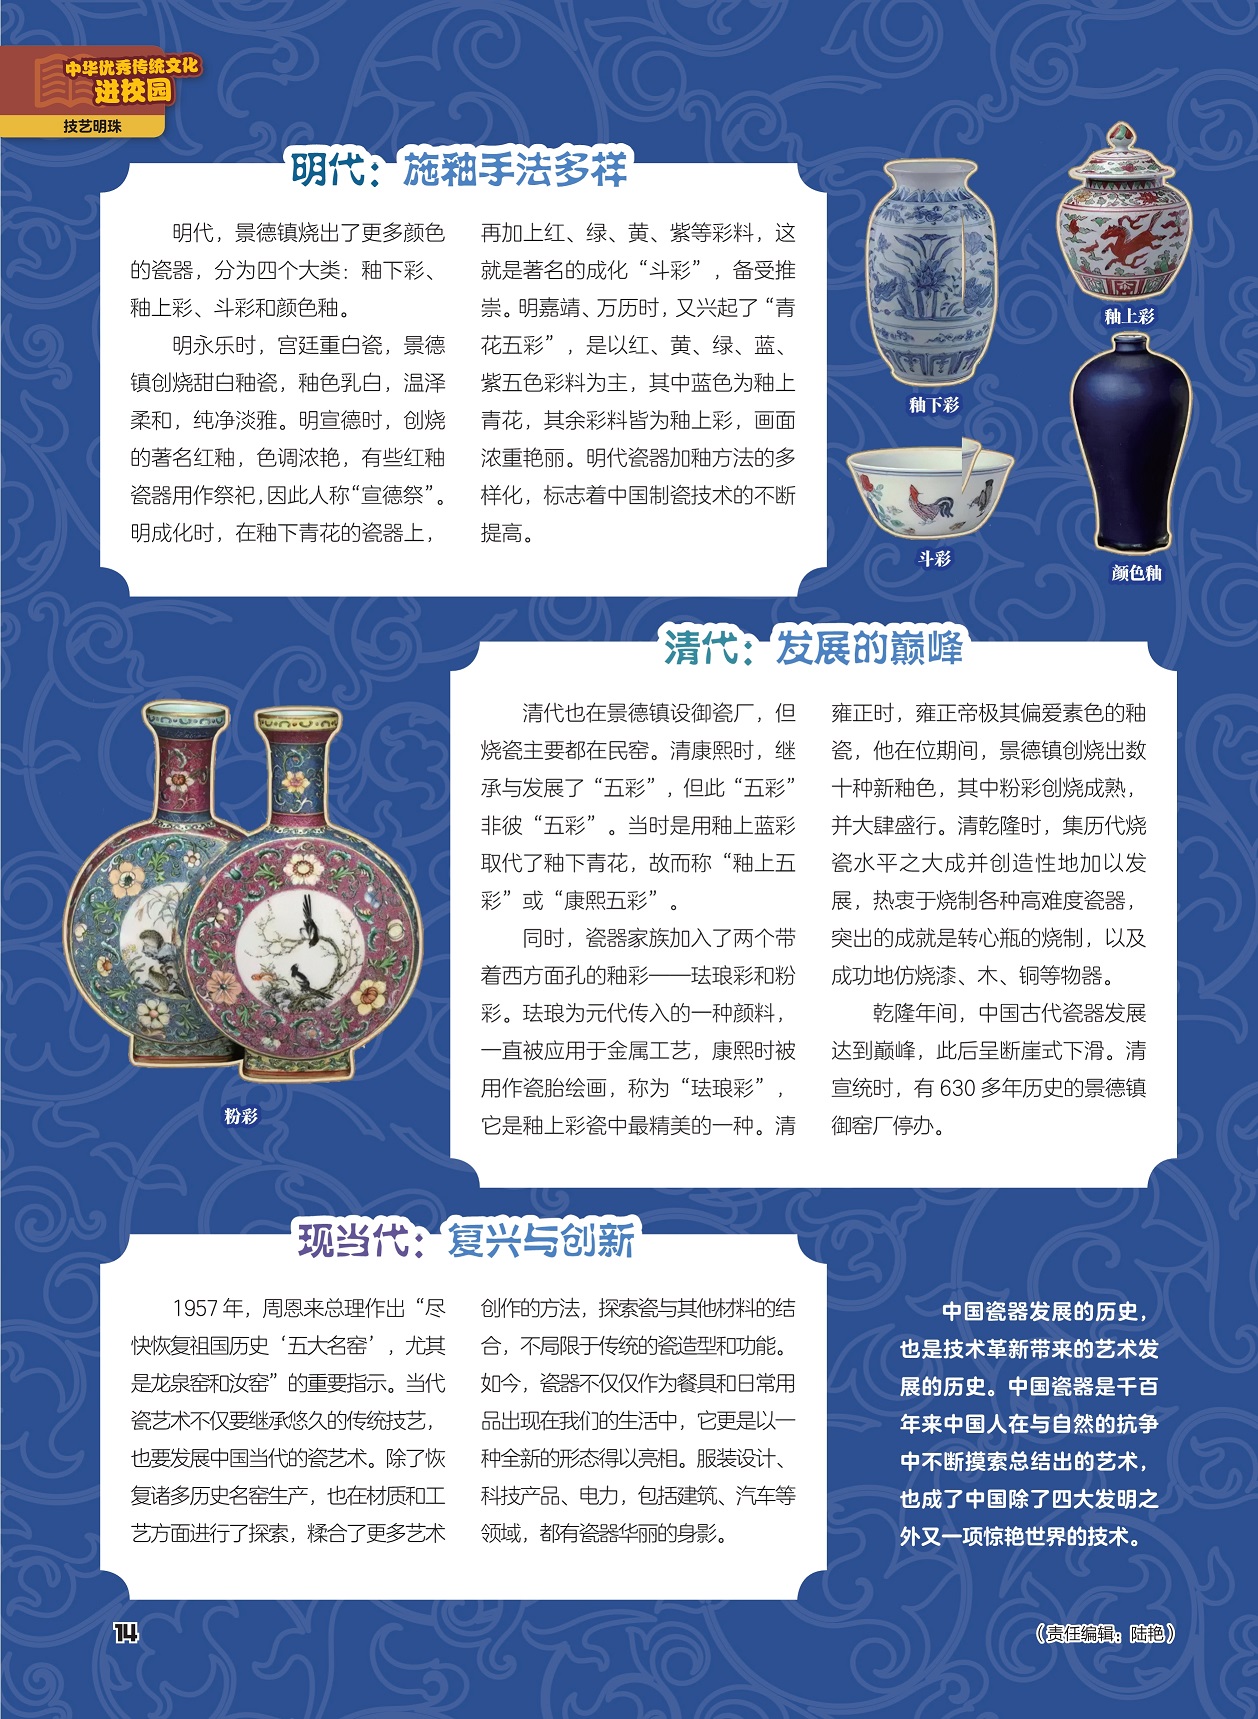 明代施釉手法多样,中国瓷器发展的历史